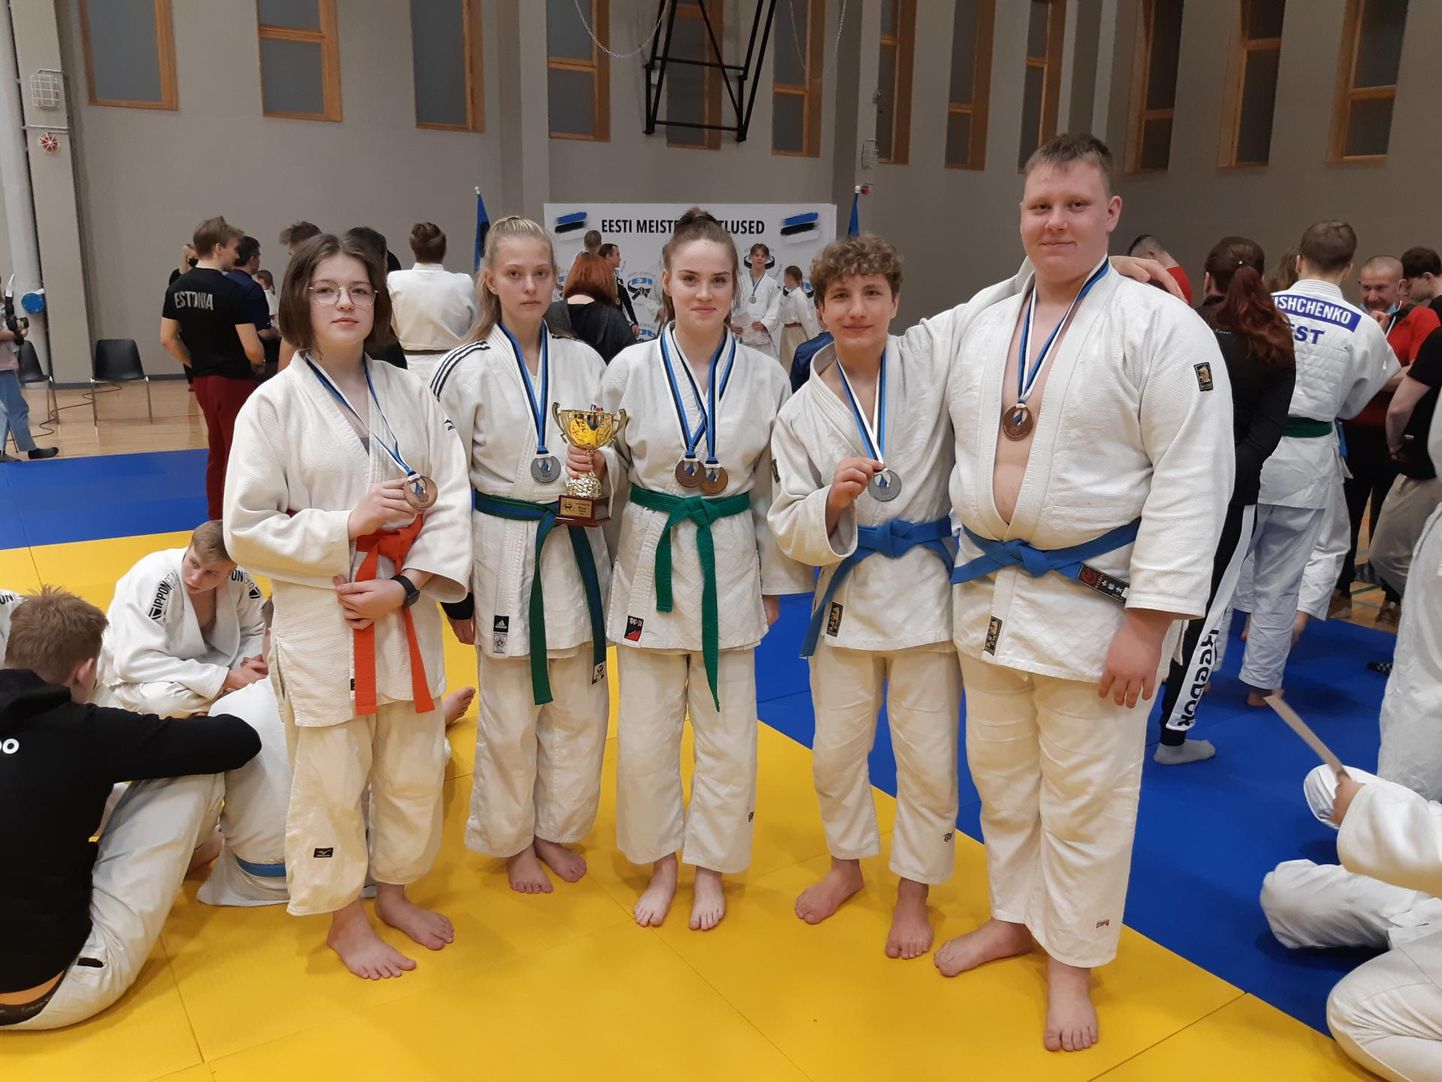 Eesti meistrivõistlustel judos medali teeninud noorsportlased.